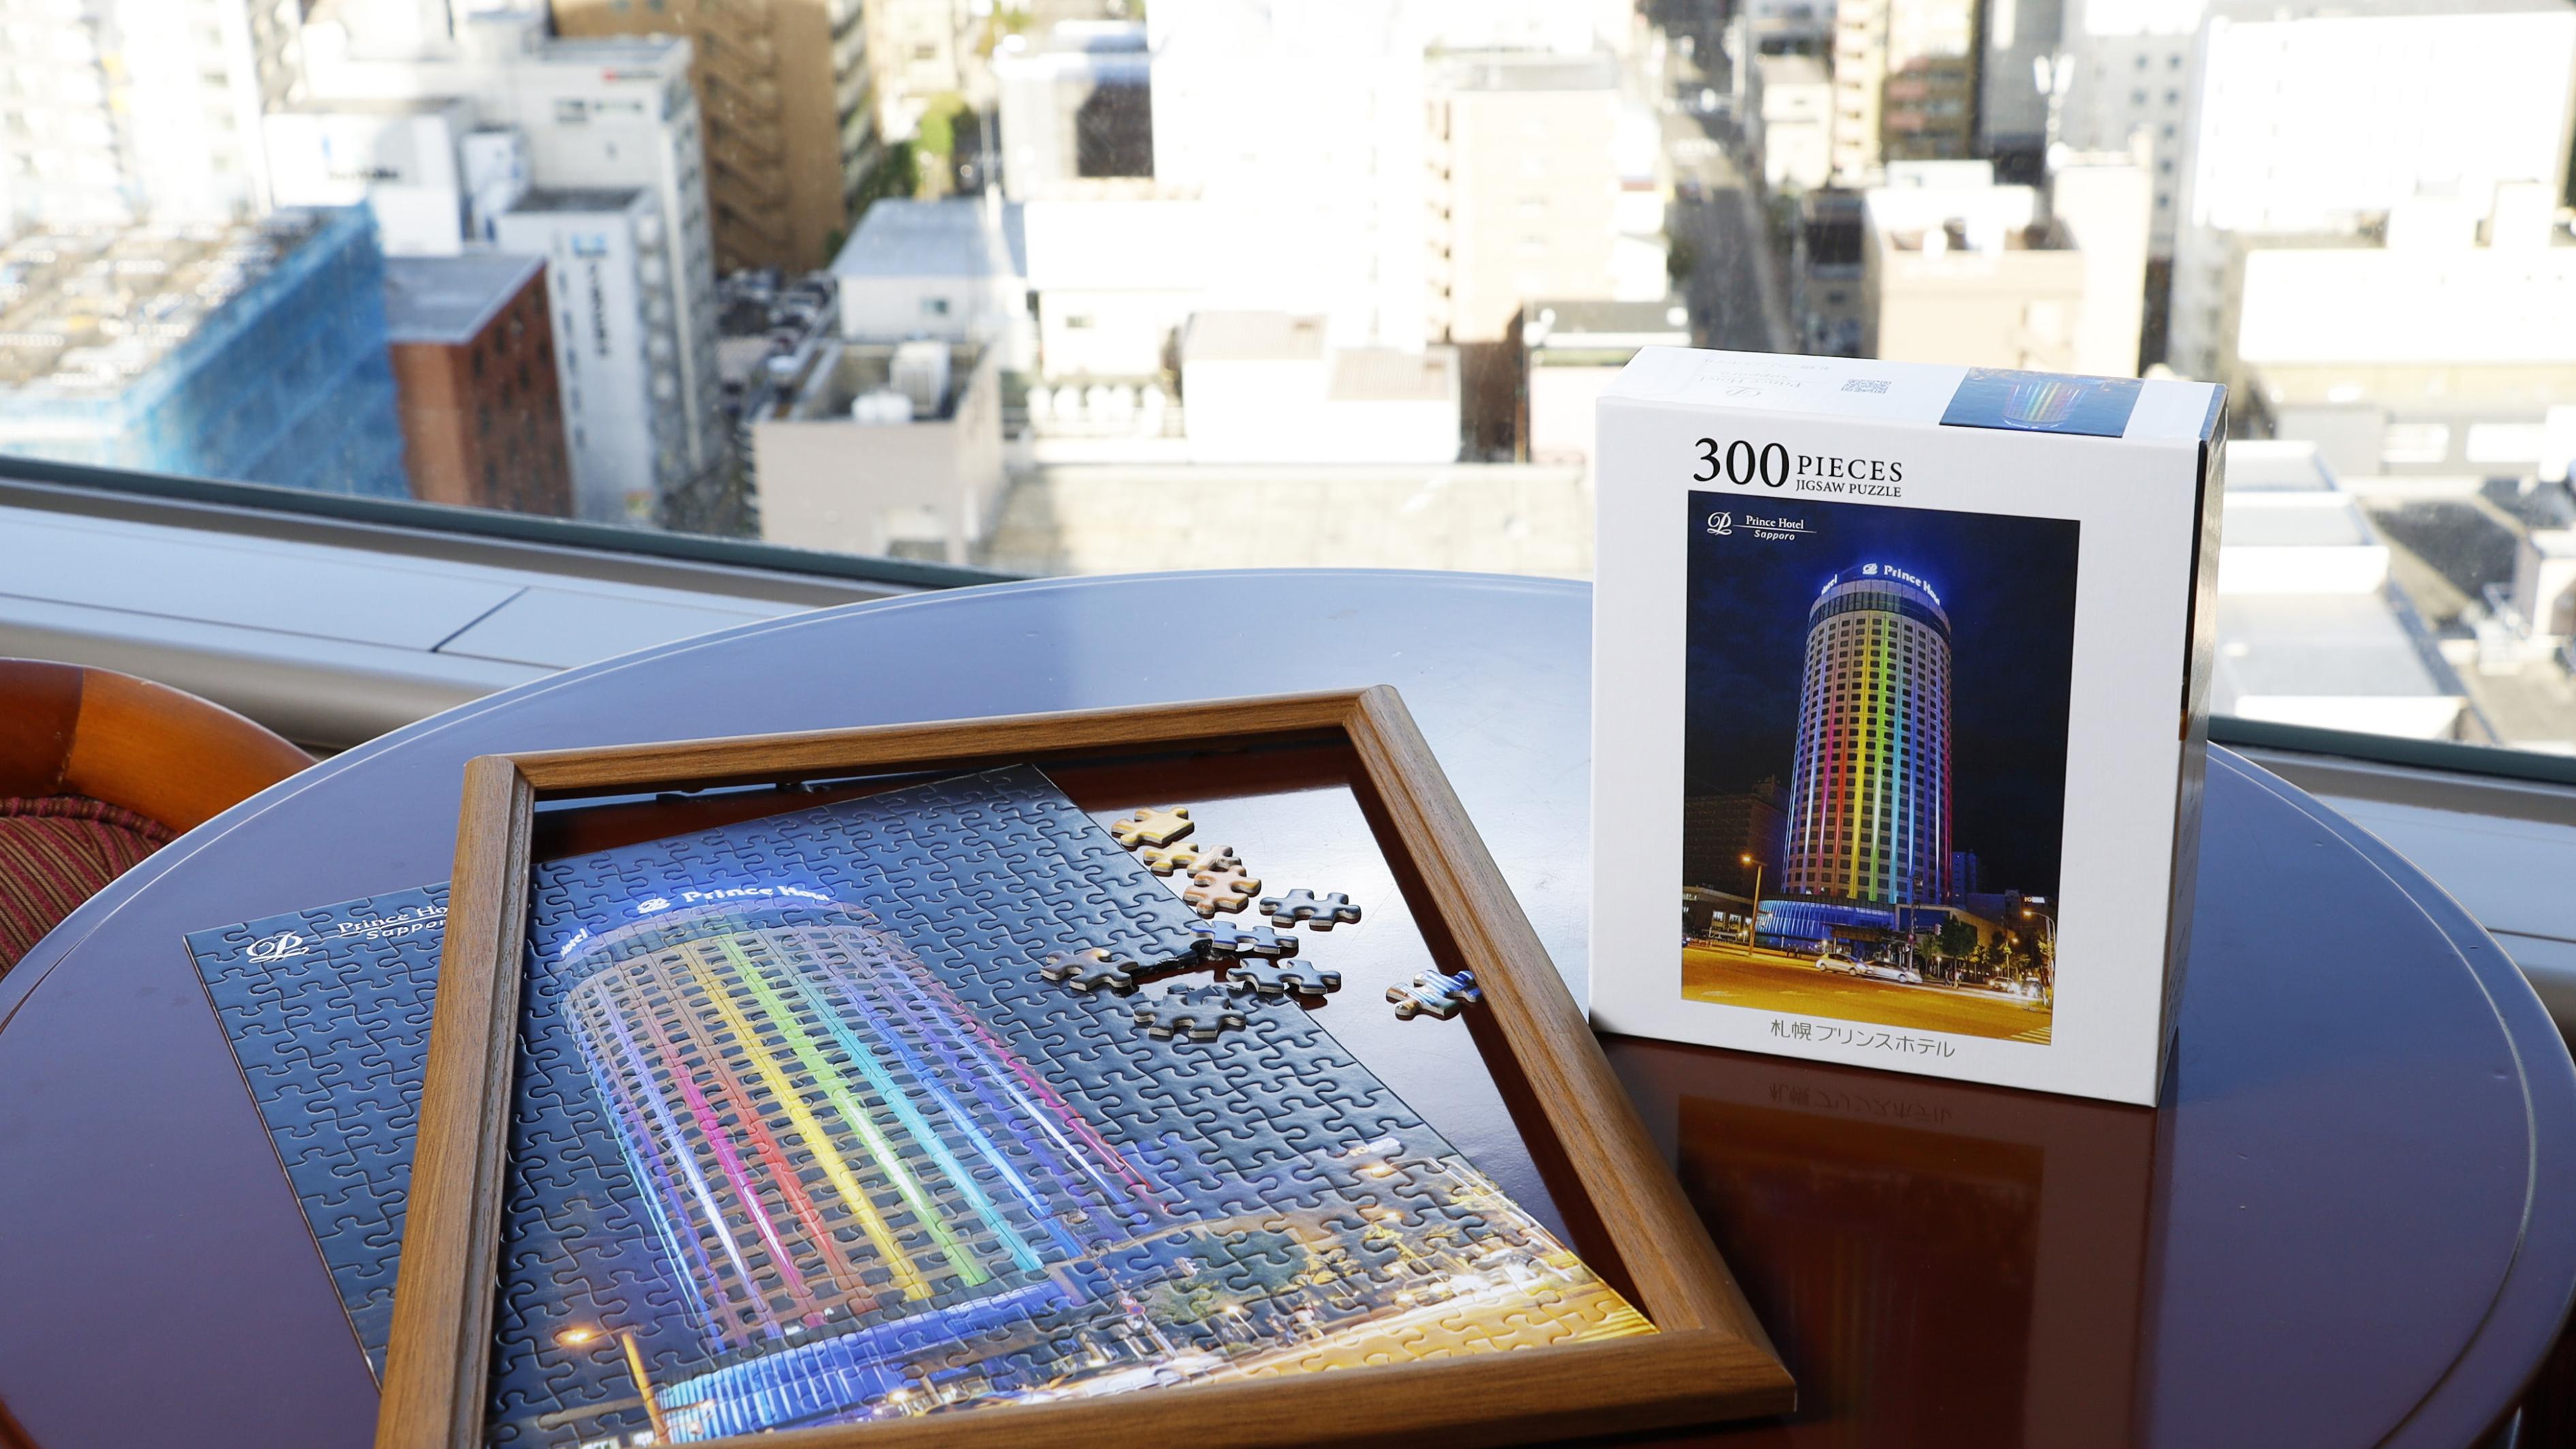 札幌プリンスホテルのオリジナルジクソーパズル